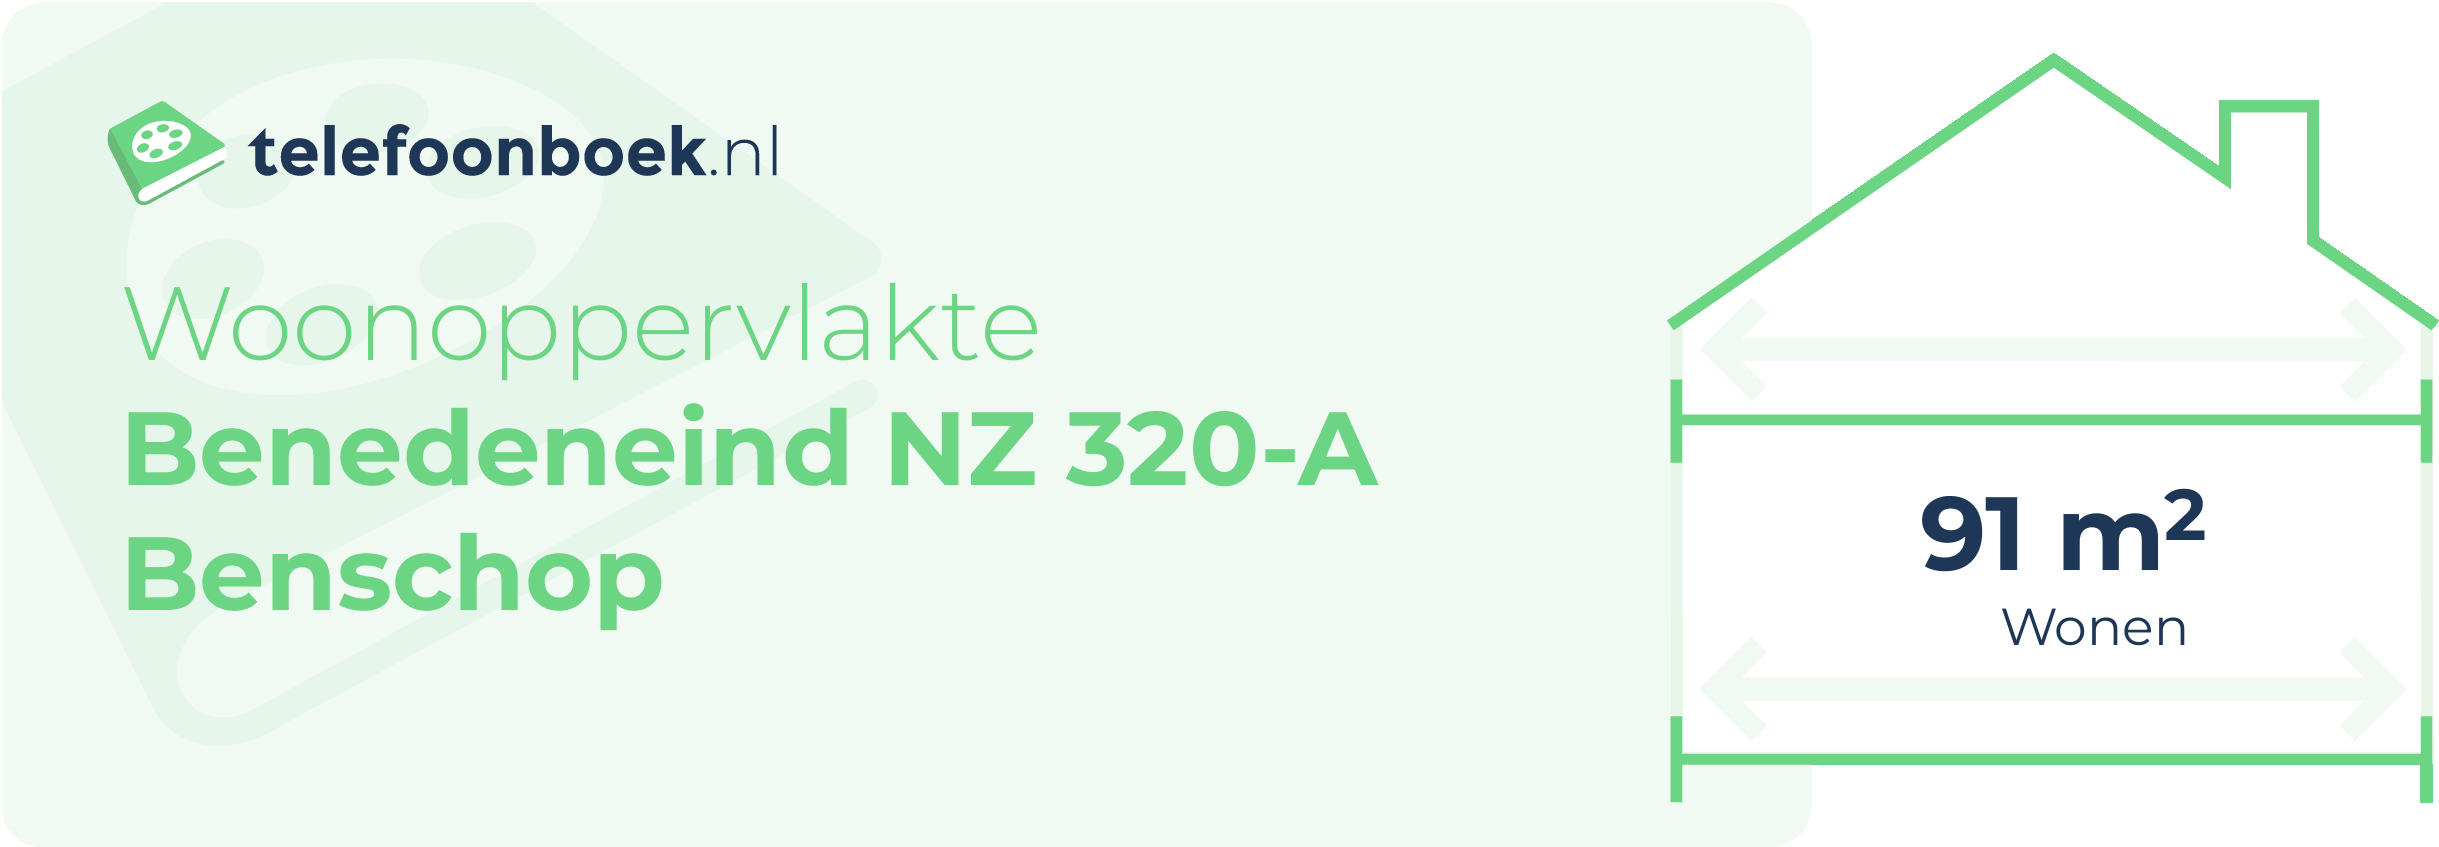 Woonoppervlakte Benedeneind NZ 320-A Benschop